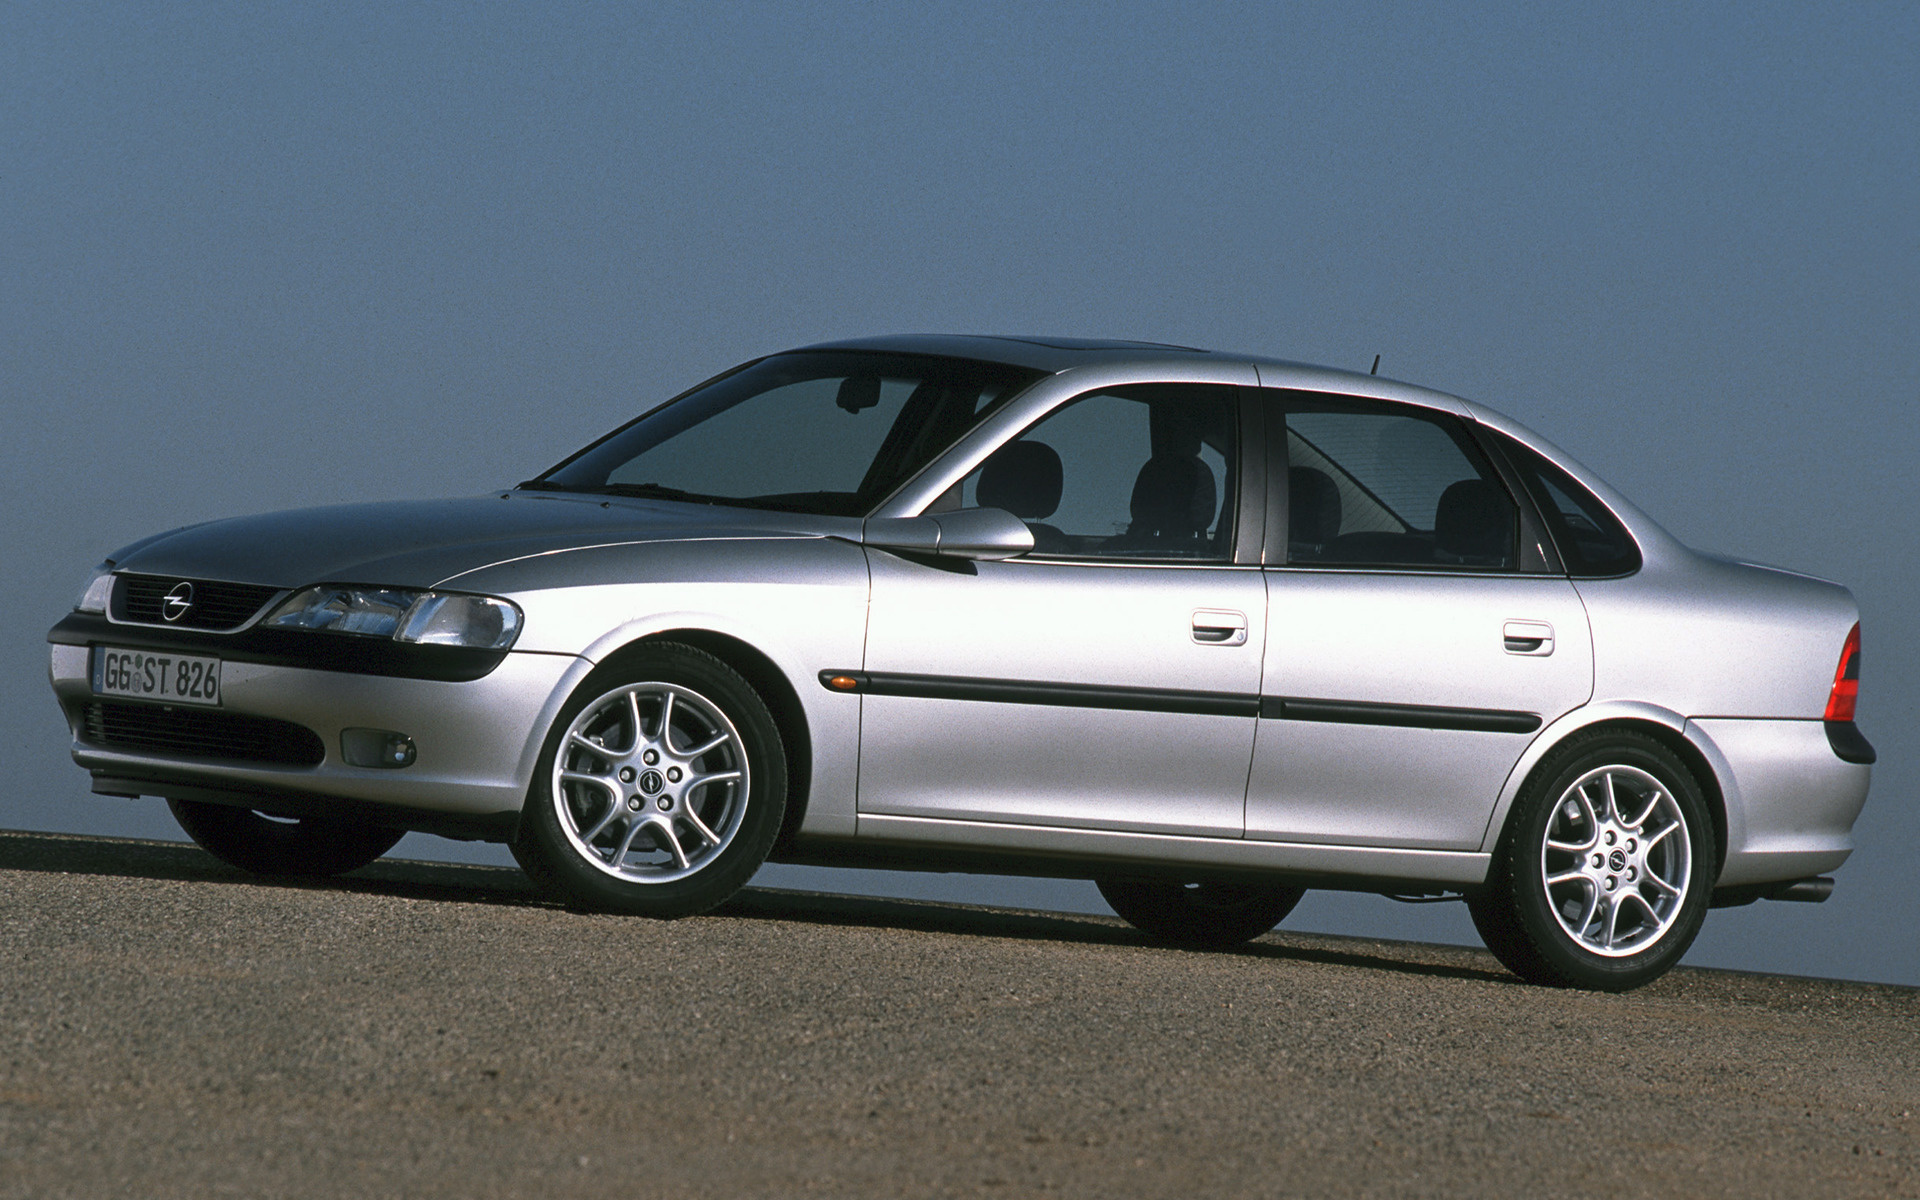 Автомобиль вектра б. Opel Vectra 1999 седан. Opel Vectra b sedan. Opel Vectra b 1995 - 2000 седан. Opel Vectra b 2002.